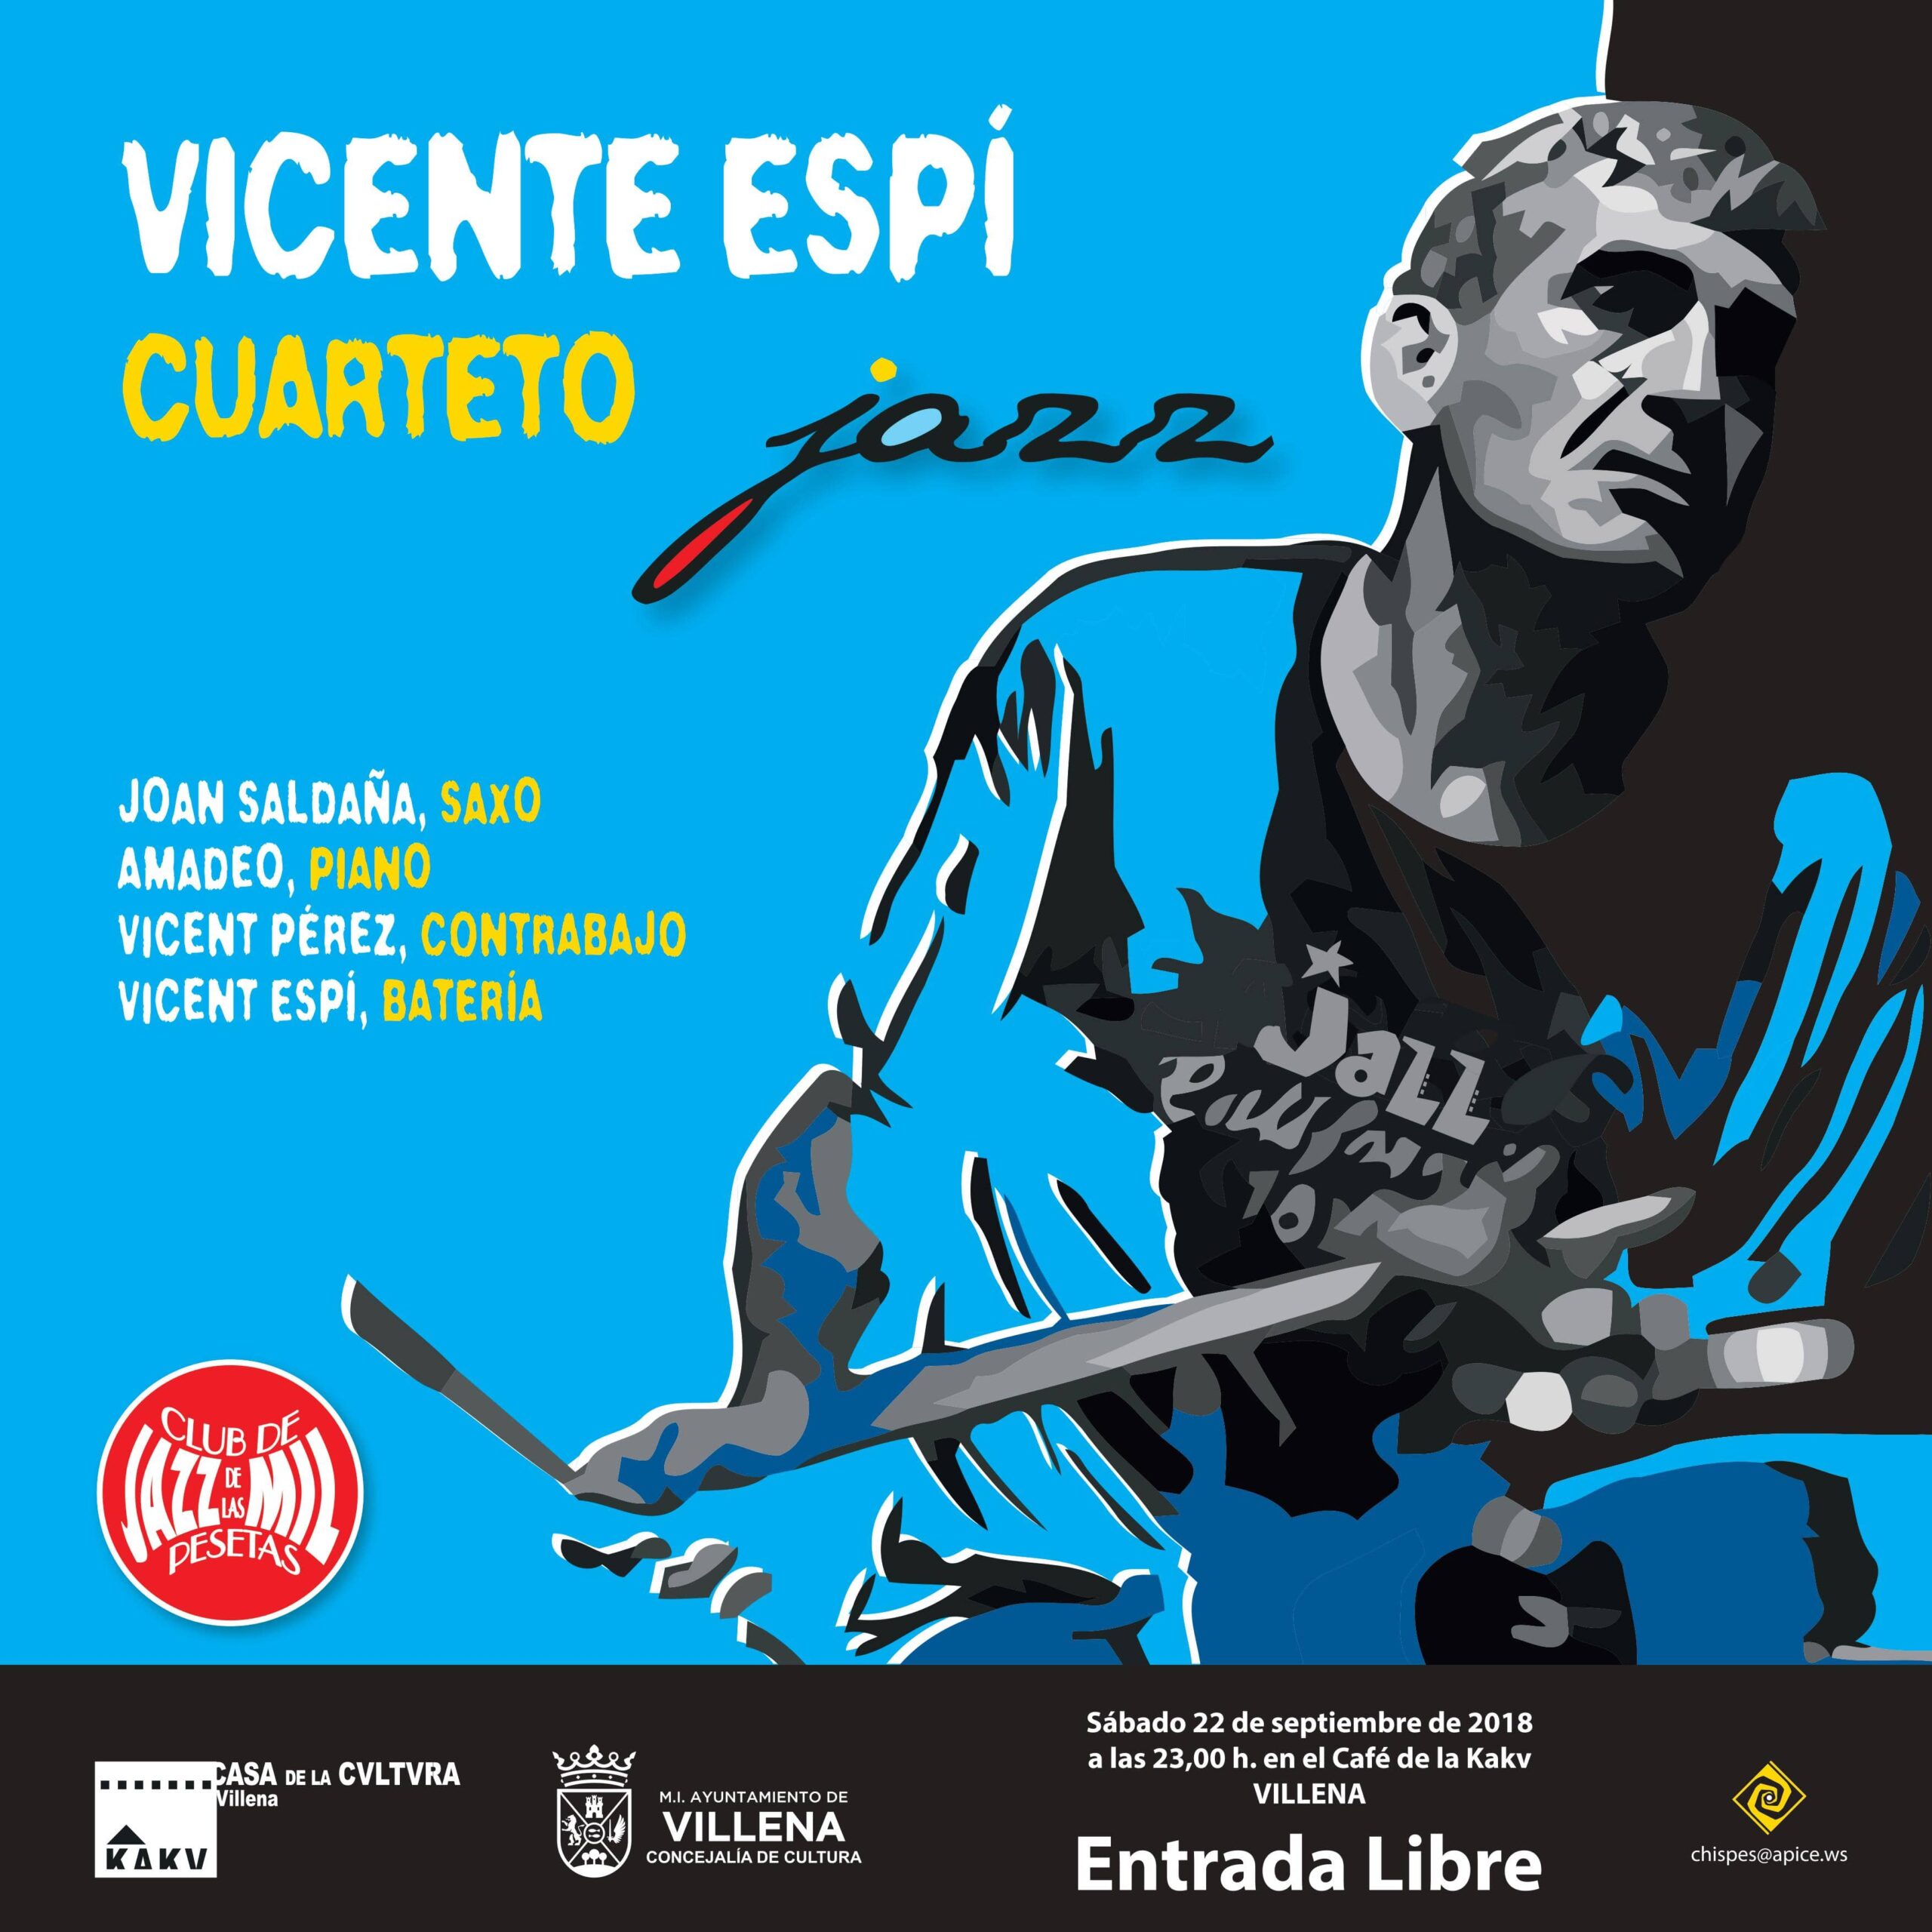 Los conciertos del Club de Jazz vuelven con Vicente Espí